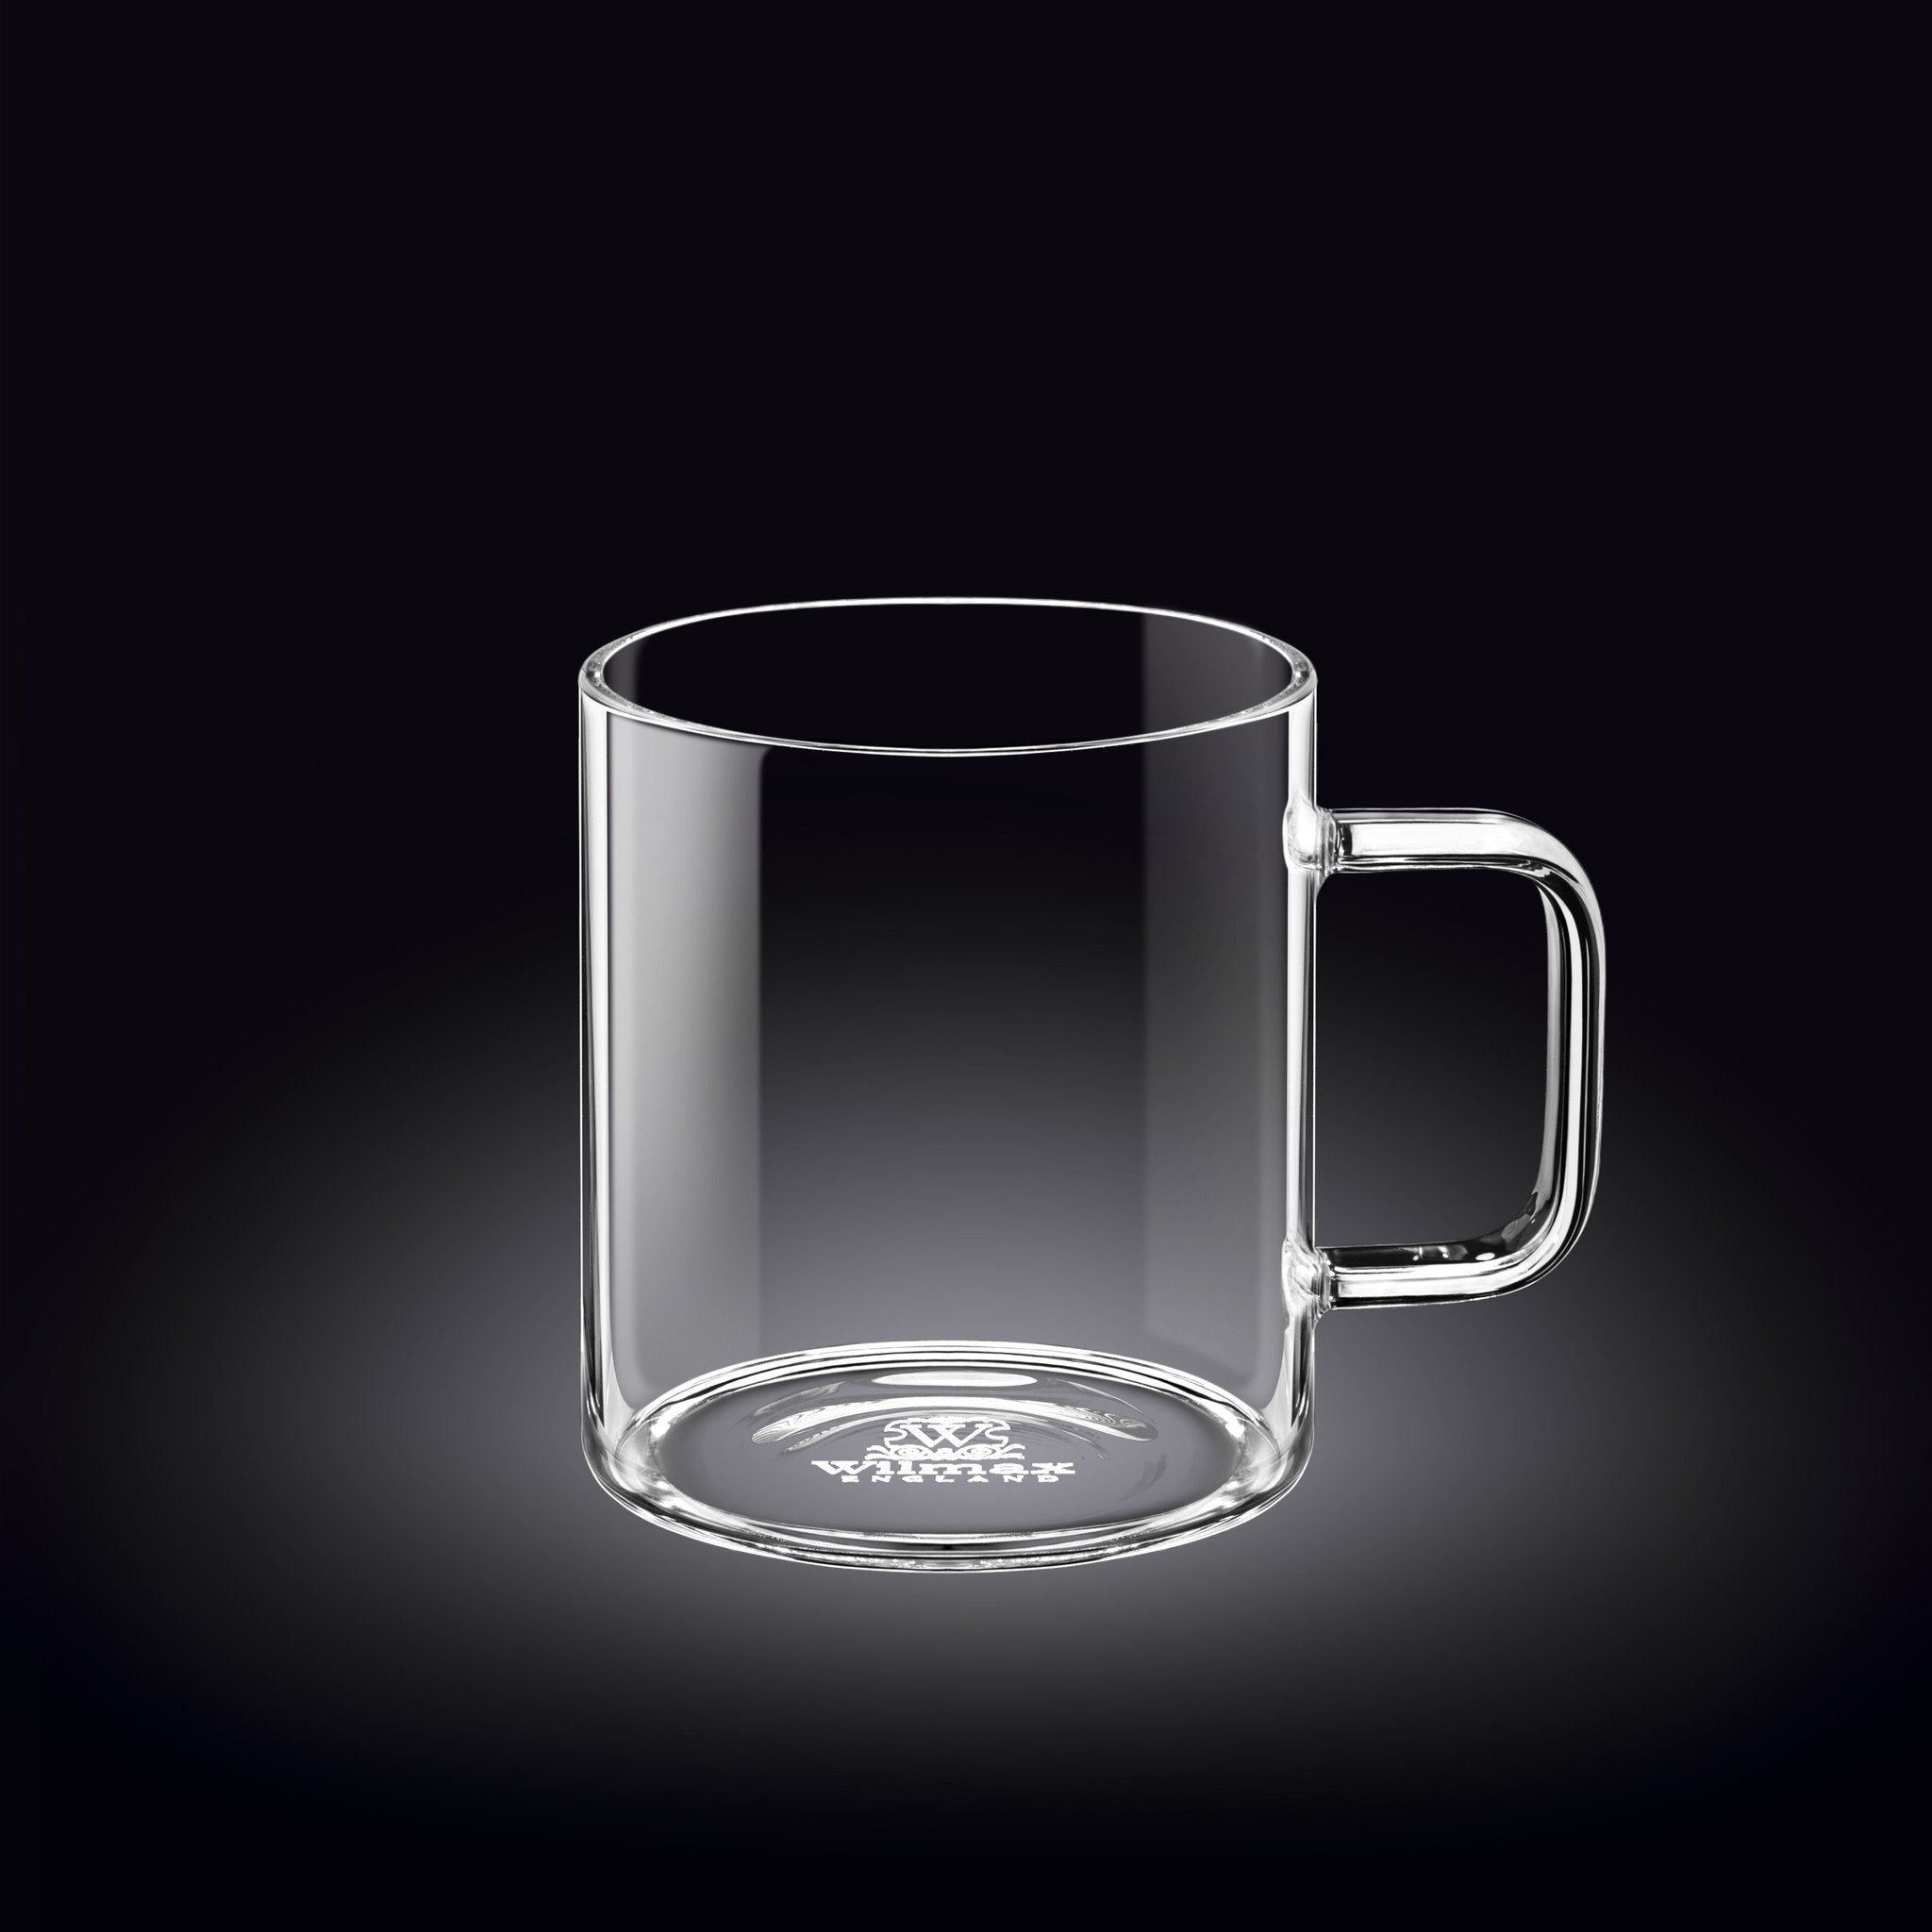 OTE 400ML Blender Mug,Accompanying Cup High Borosilicate Glass